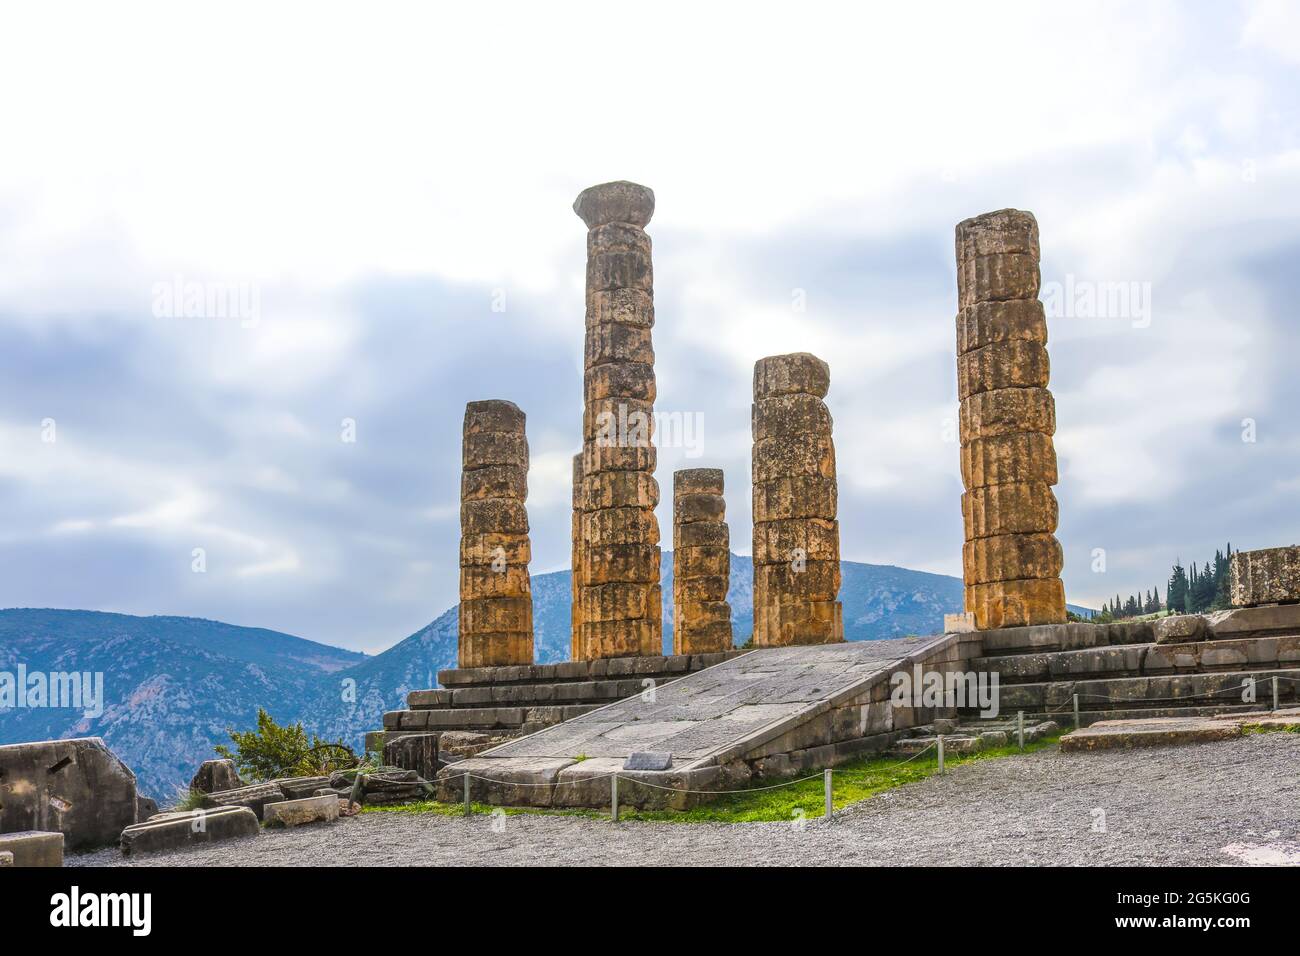 Rekonstruierte Säulen des Apollontempels in Delphi Griechenland überblicken das Tal mit fernen Bergen an nebligen Tagen Stockfoto